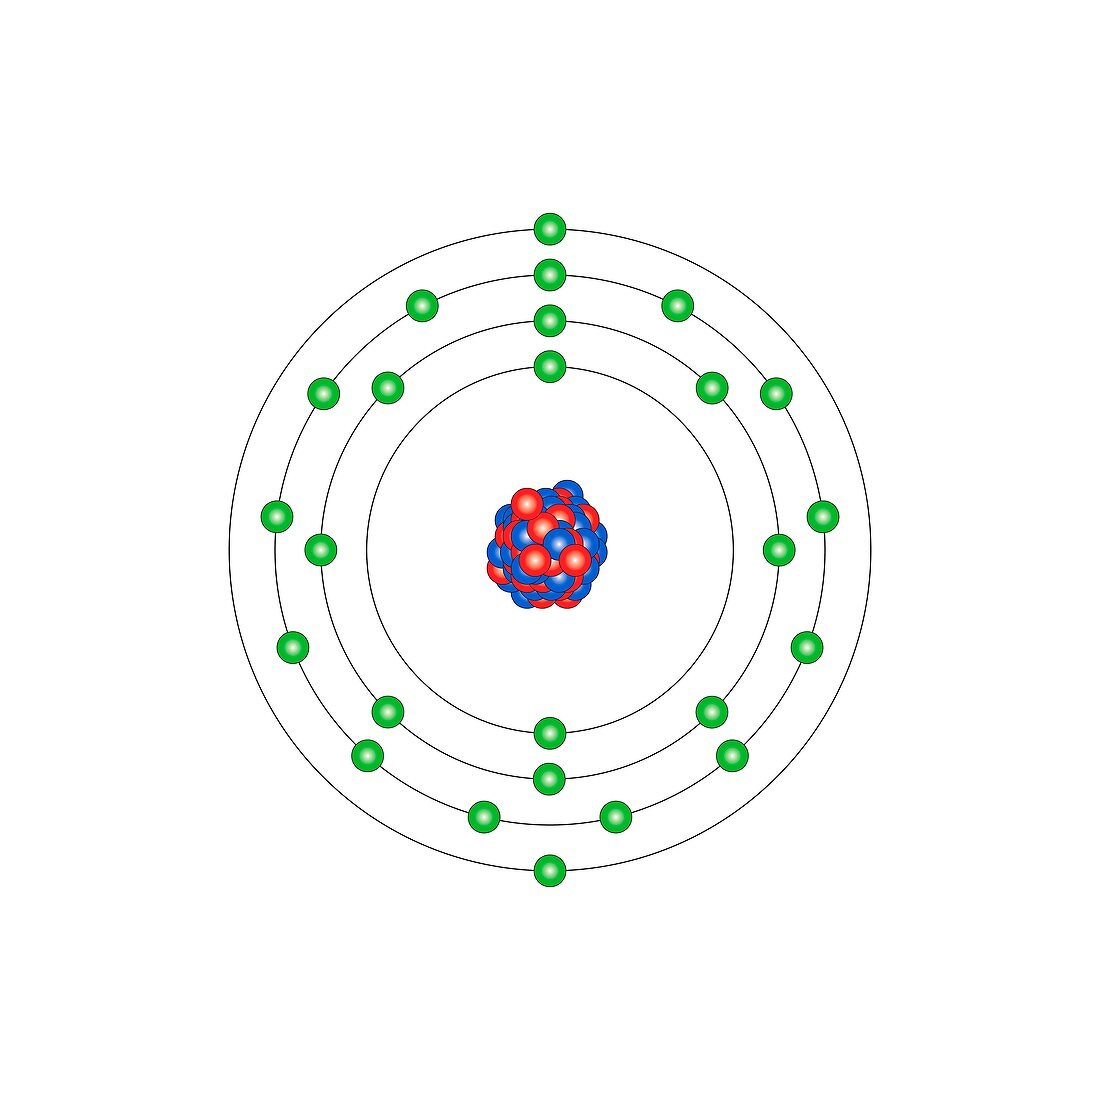 Manganese,atomic structure